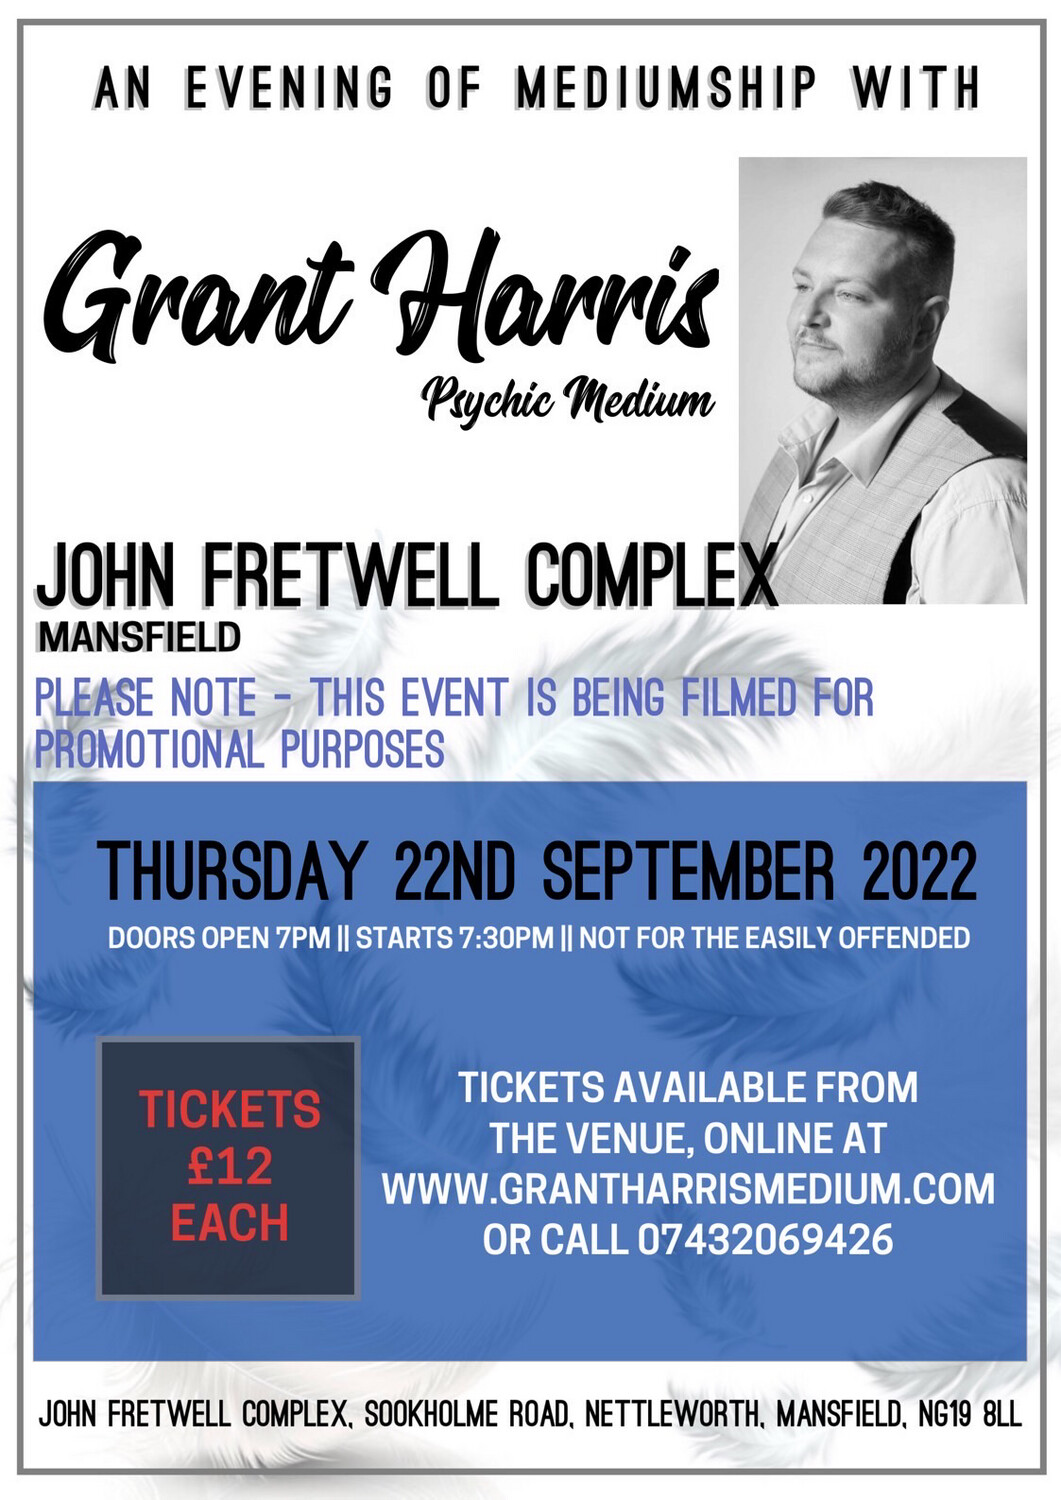 John Fretwell Complex, Mansfield, Thu 22nd September 2022